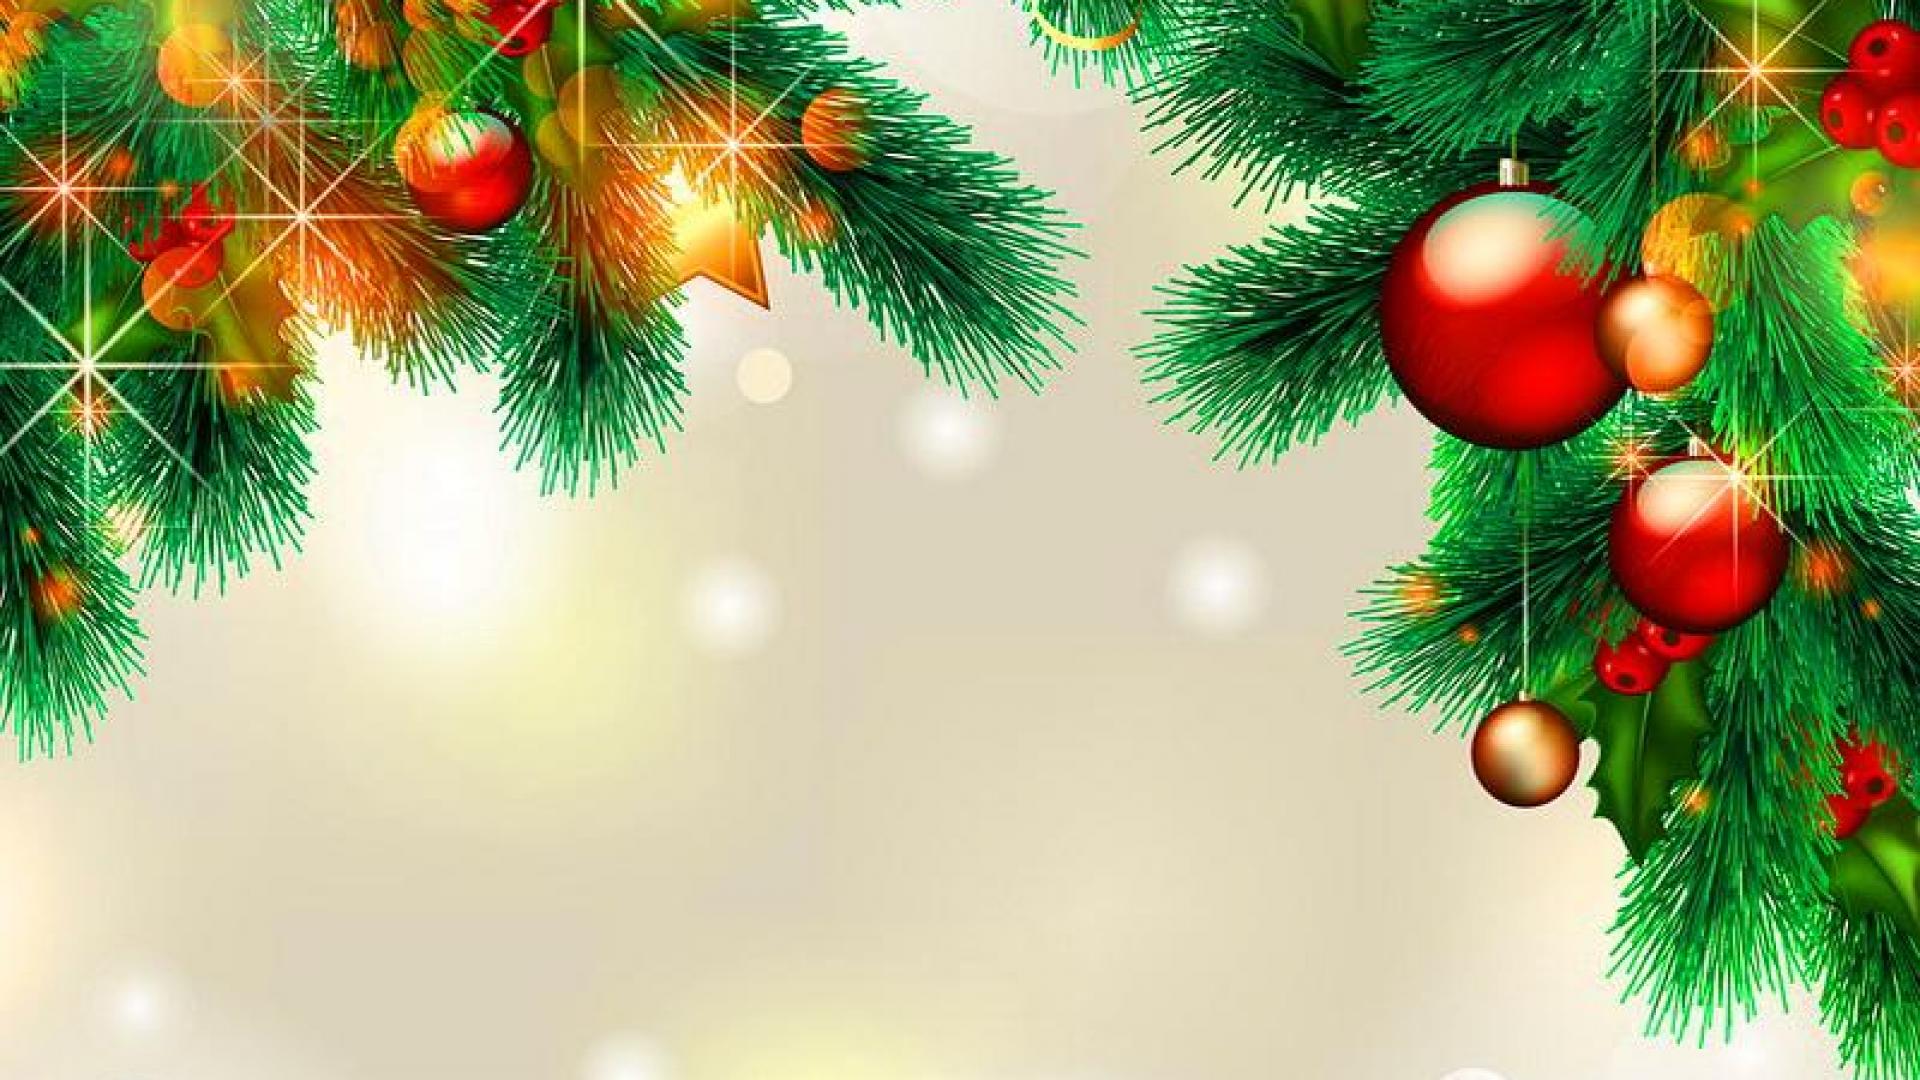 weihnachtstapete hd,weihnachtsschmuck,baum,weihnachtsbaum,weihnachtsdekoration,tanne